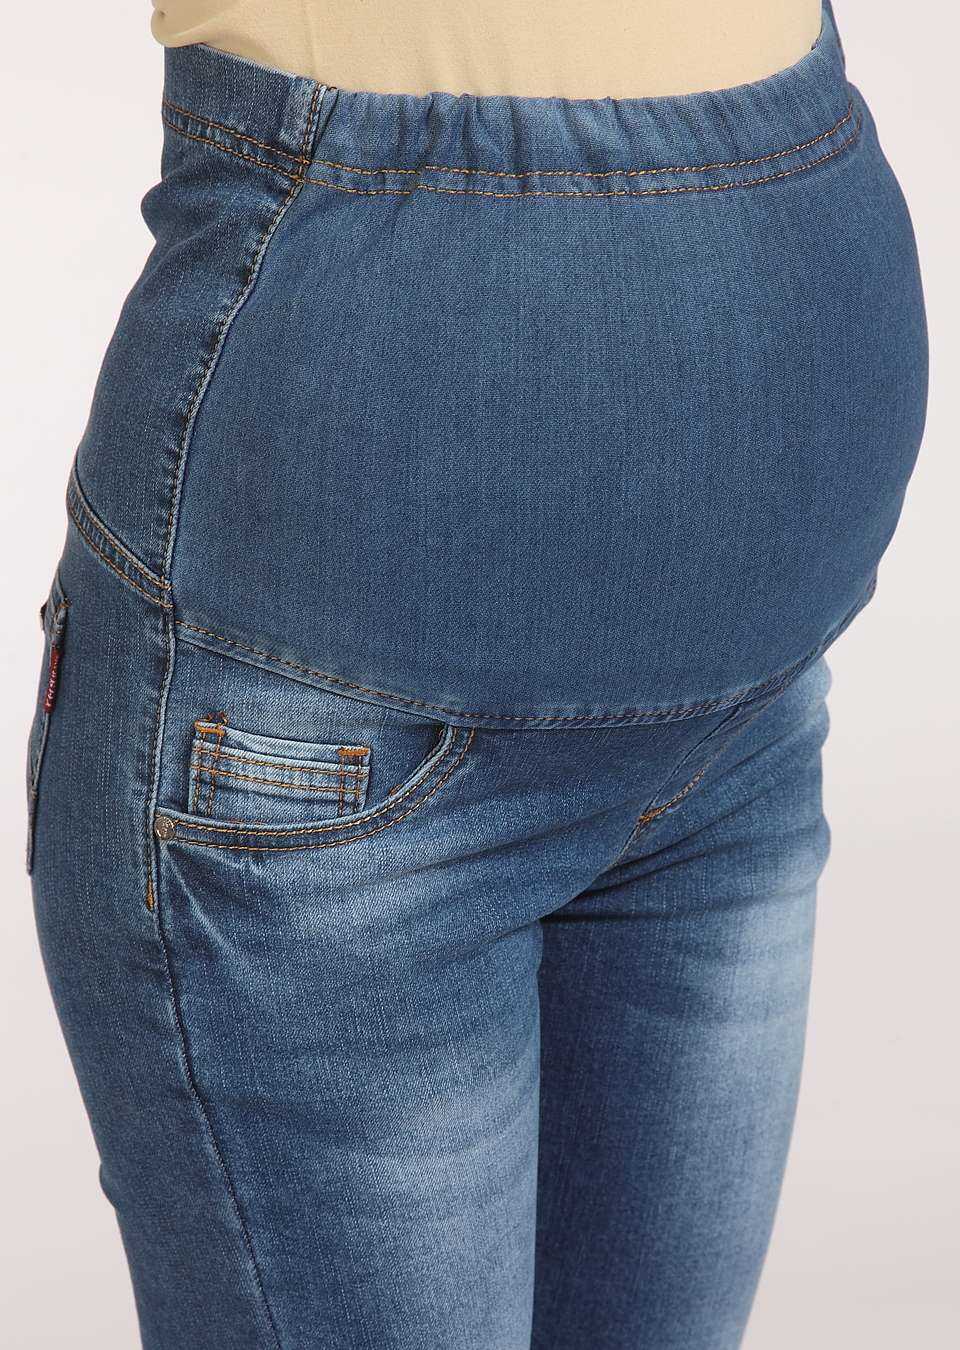 Джинсы для беременных своими руками | джинсы